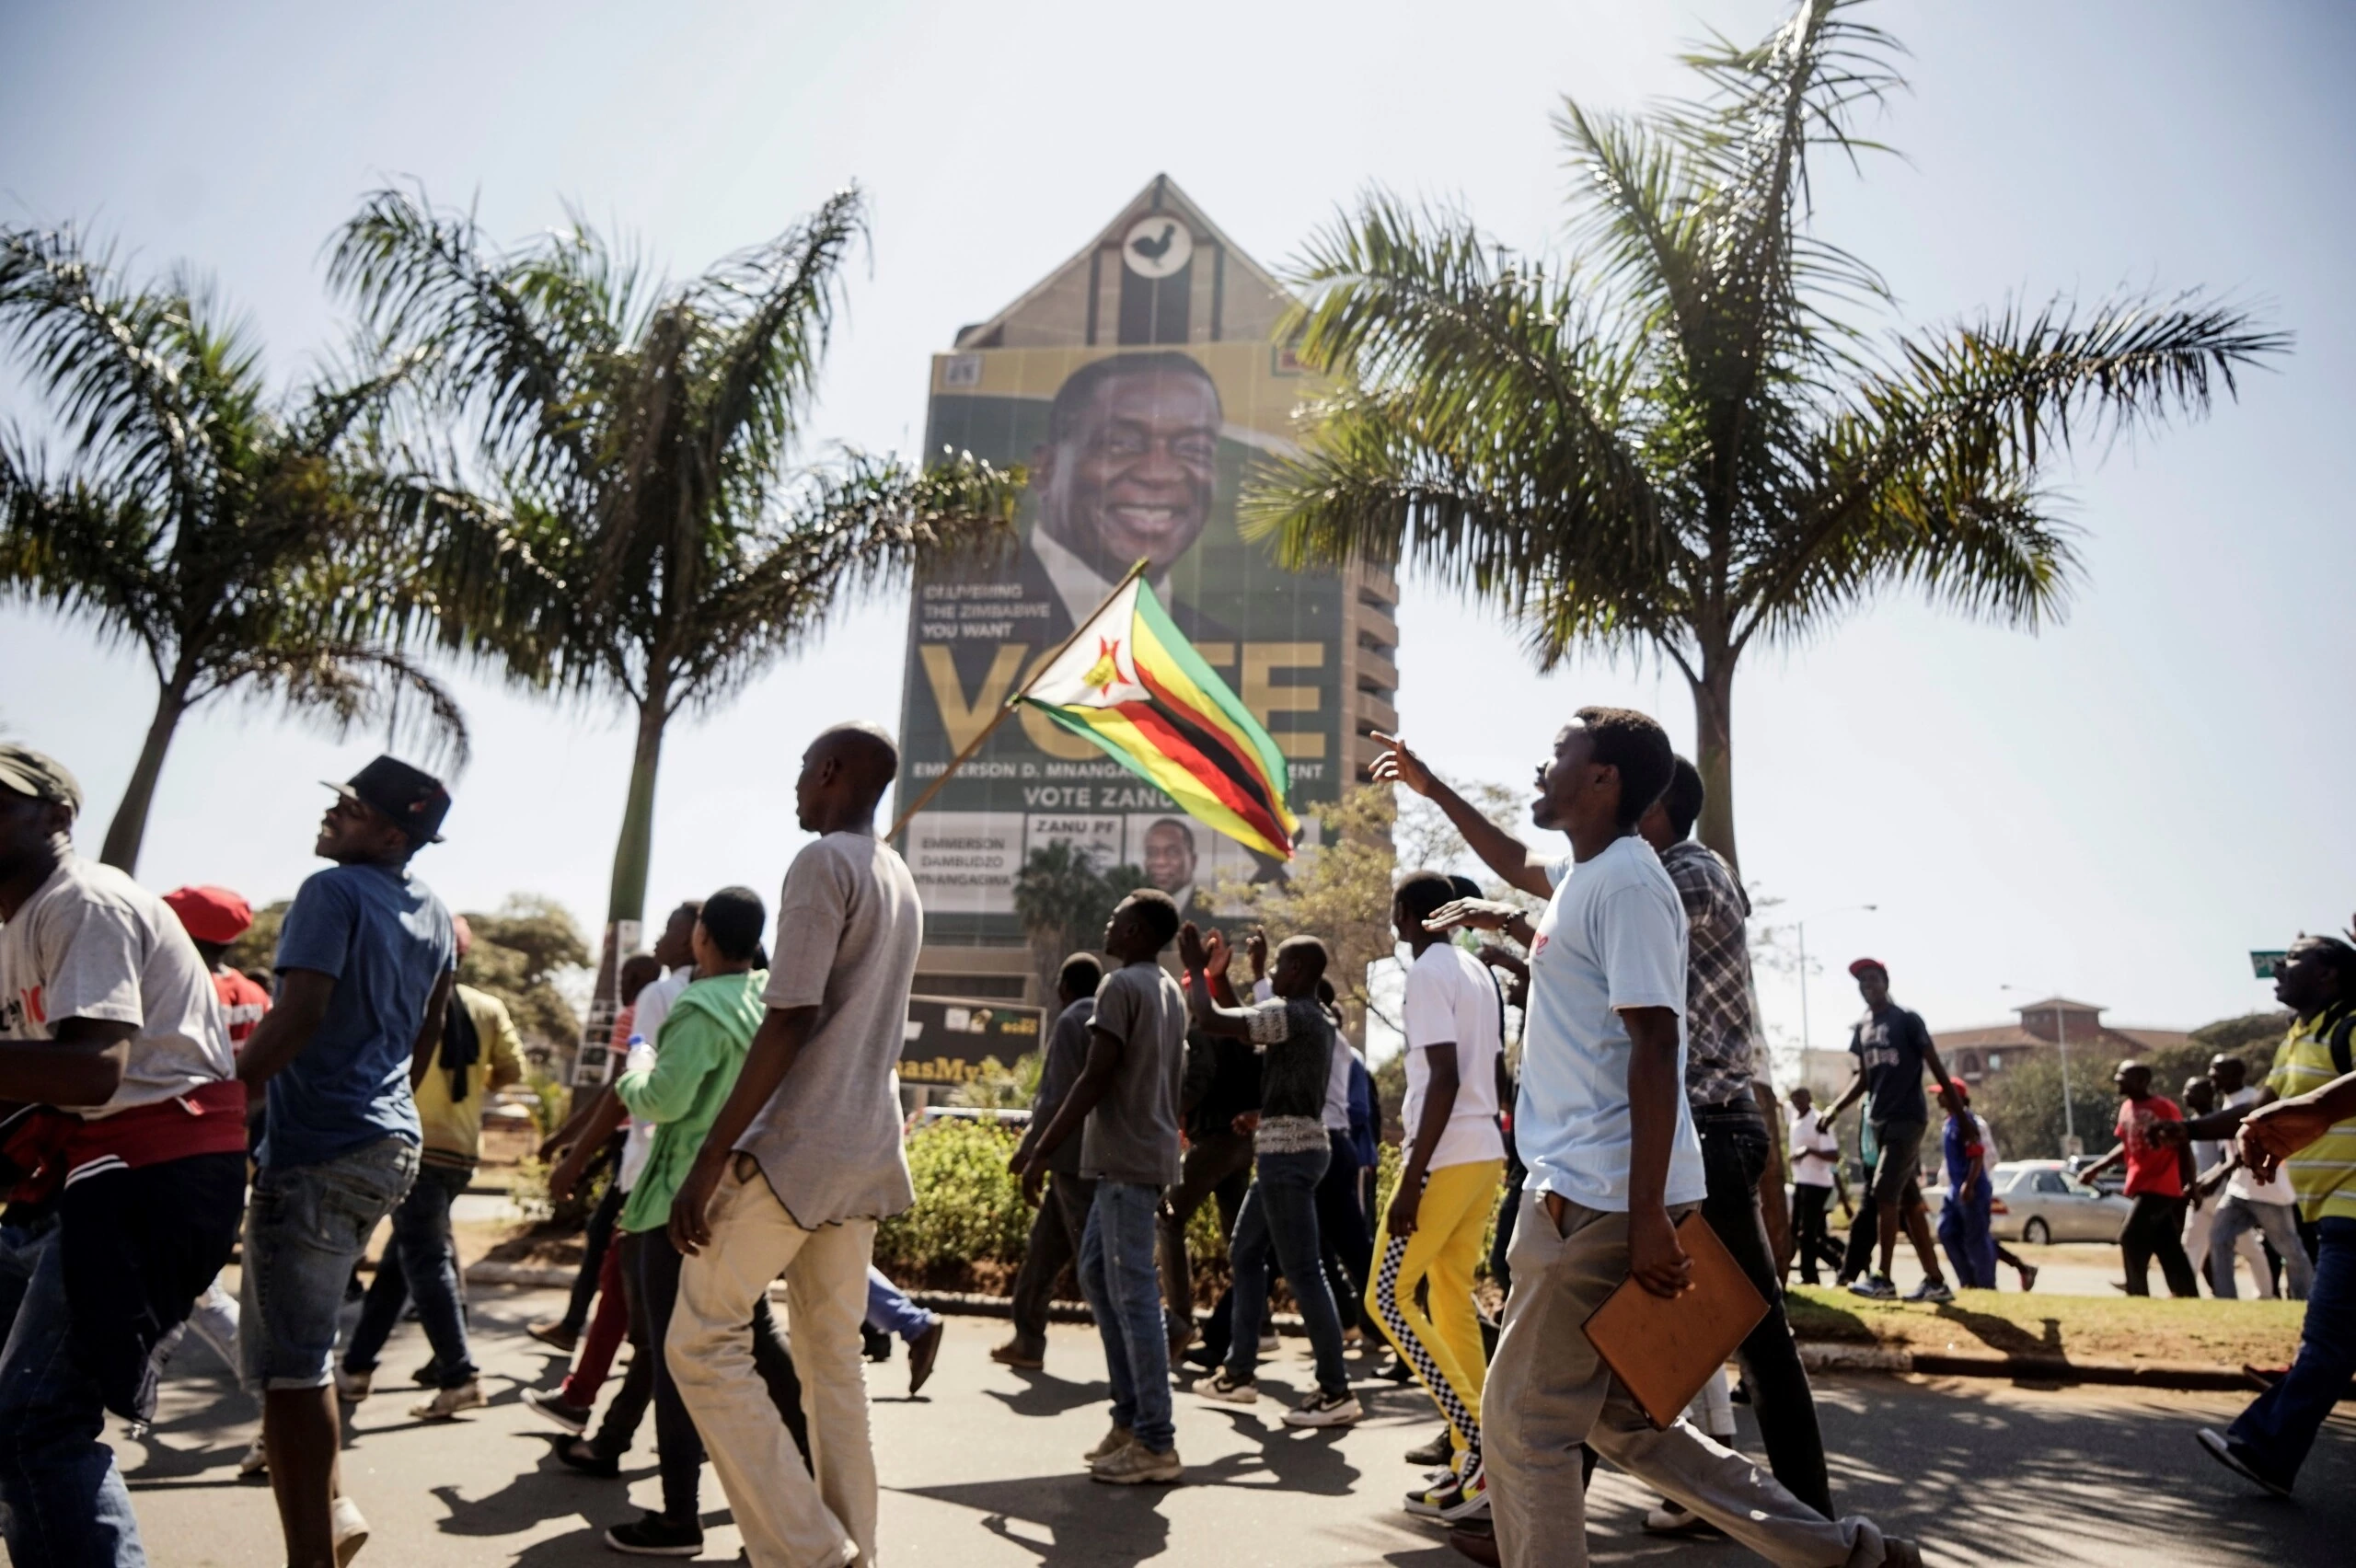 Apoiadores da oposição, o Movimento pela Mudança Democrática, caminham em direção à sede da Comissão Eleitoral do Zimbábue em Harare, em 1º de agosto de 2018, para protestar contra a suposta fraude nas eleições.